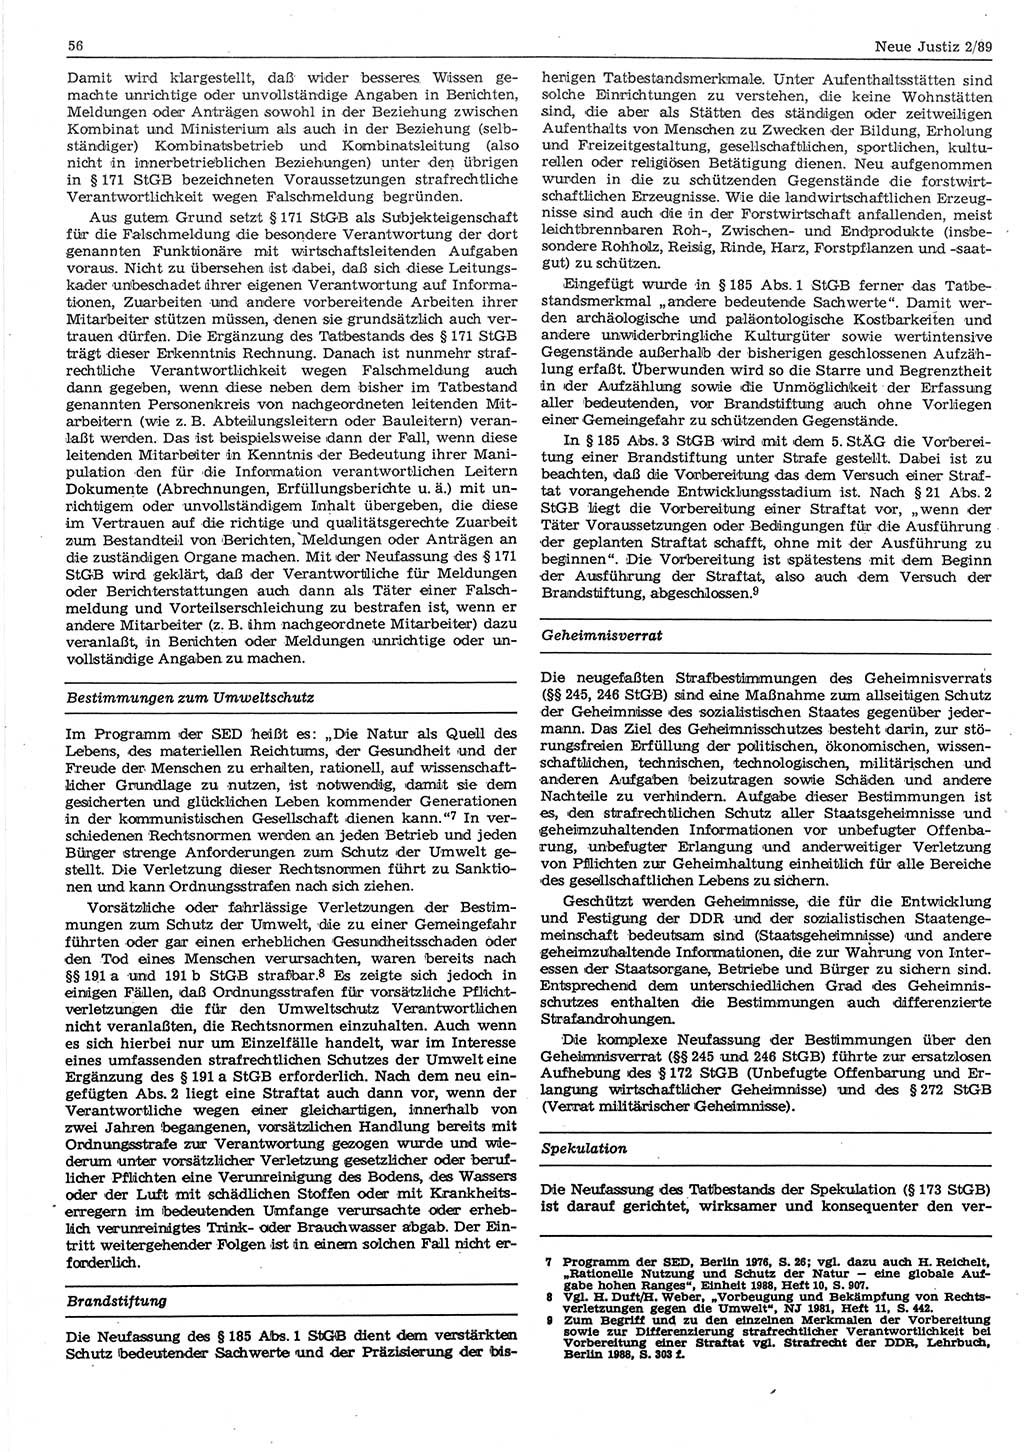 Neue Justiz (NJ), Zeitschrift für sozialistisches Recht und Gesetzlichkeit [Deutsche Demokratische Republik (DDR)], 43. Jahrgang 1989, Seite 56 (NJ DDR 1989, S. 56)